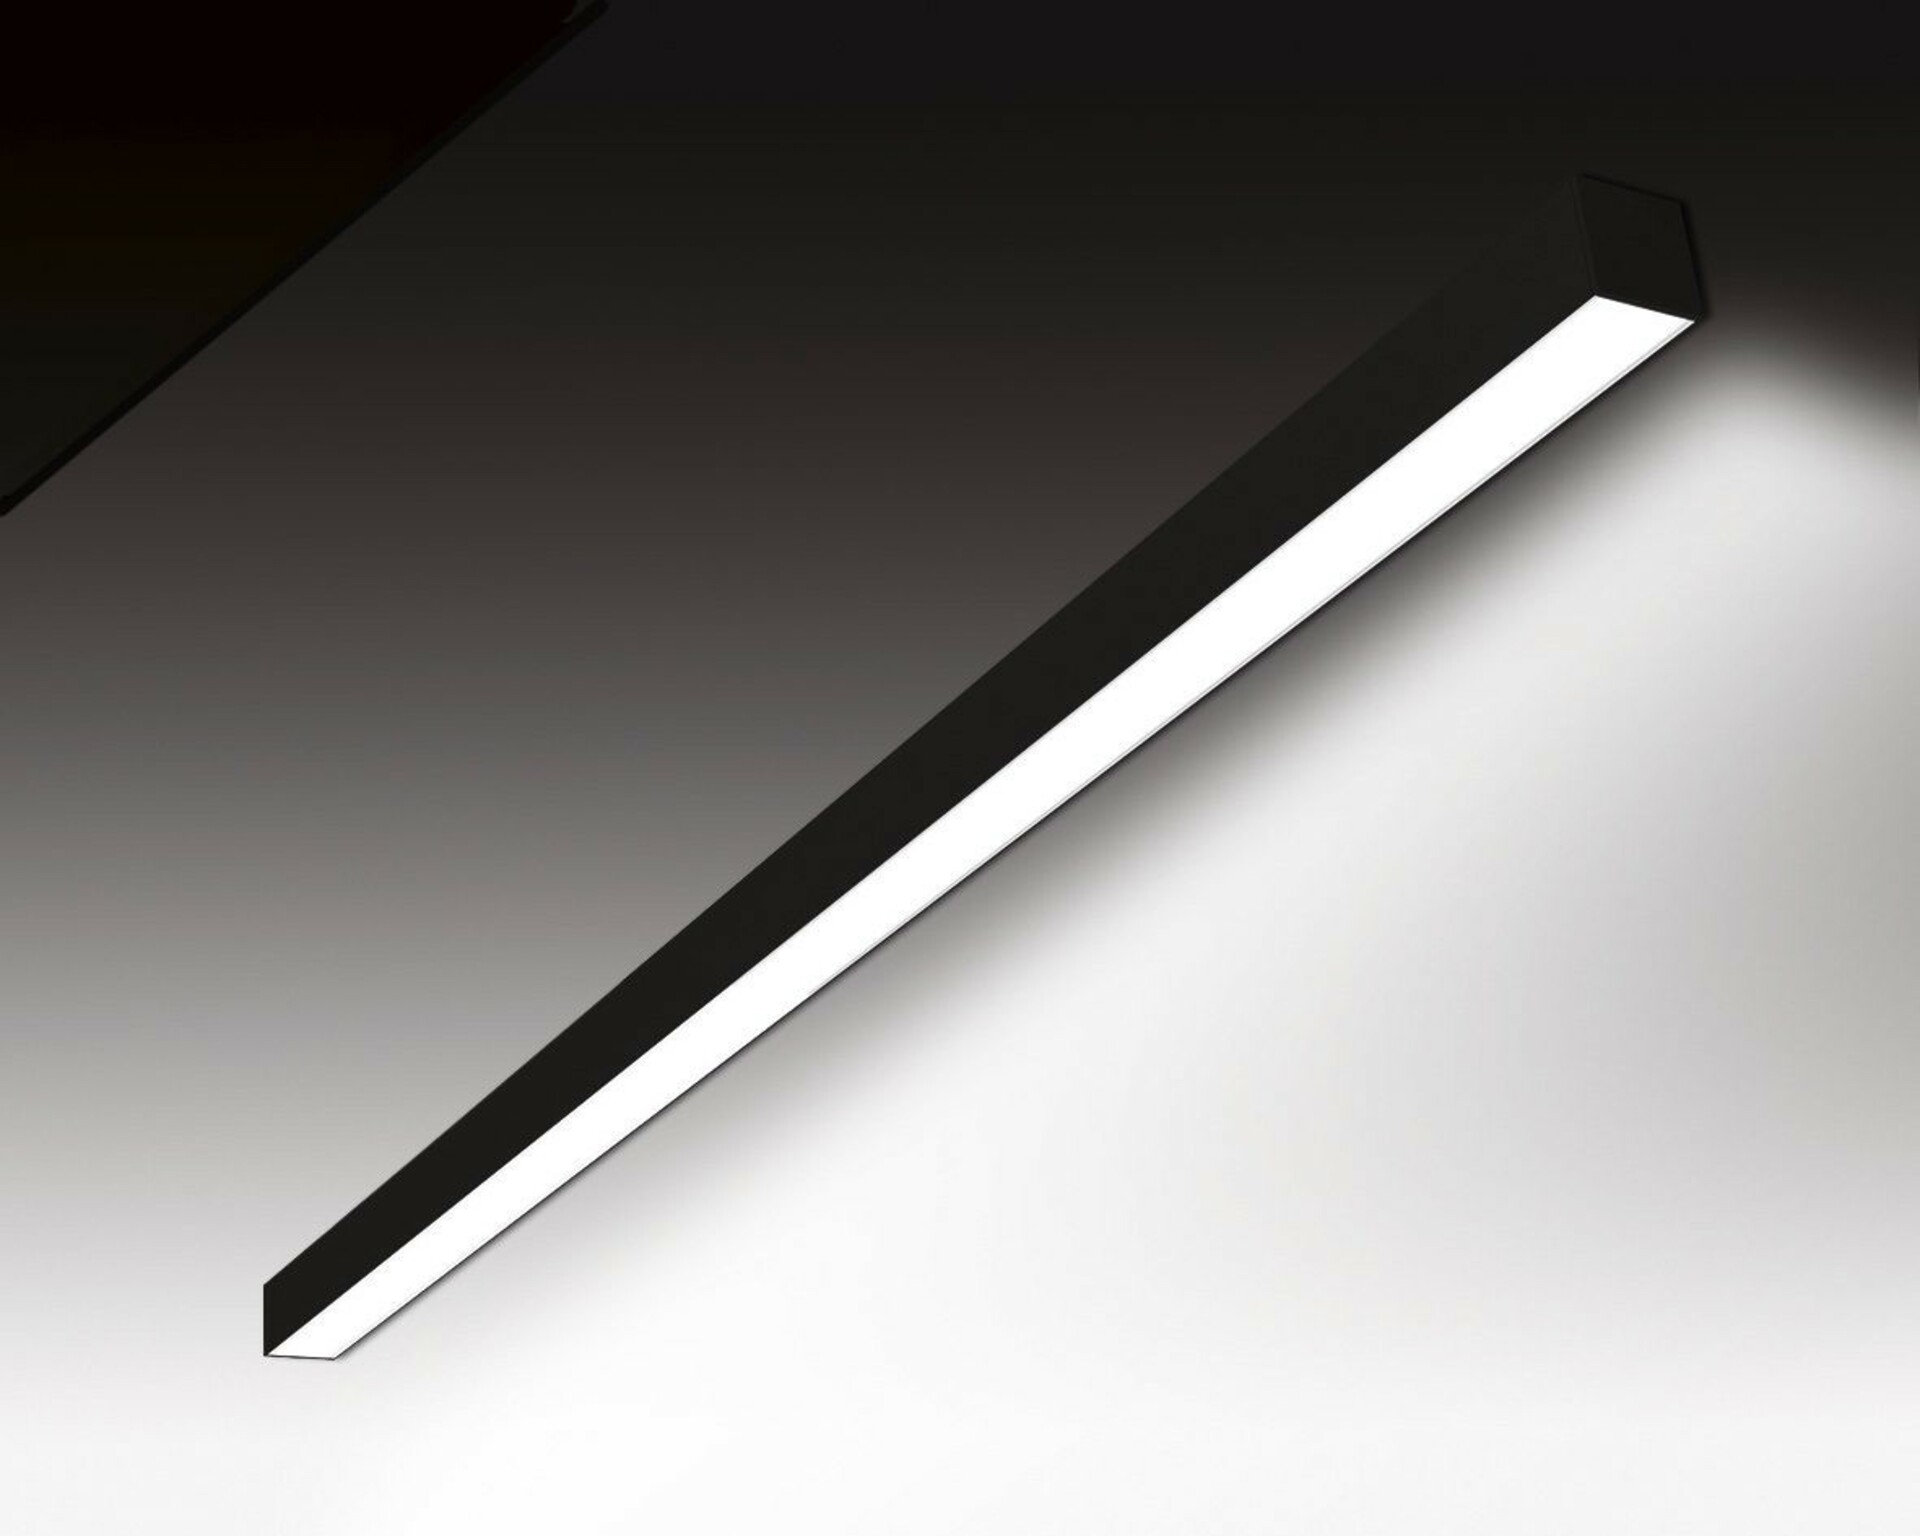 SEC Nástěnné LED svítidlo WEGA-MODULE2-DA-DIM-DALI, 18 W, černá, 1130 x 50 x 50 mm, 4000 K, 2400 lm 320-B-112-01-02-SP